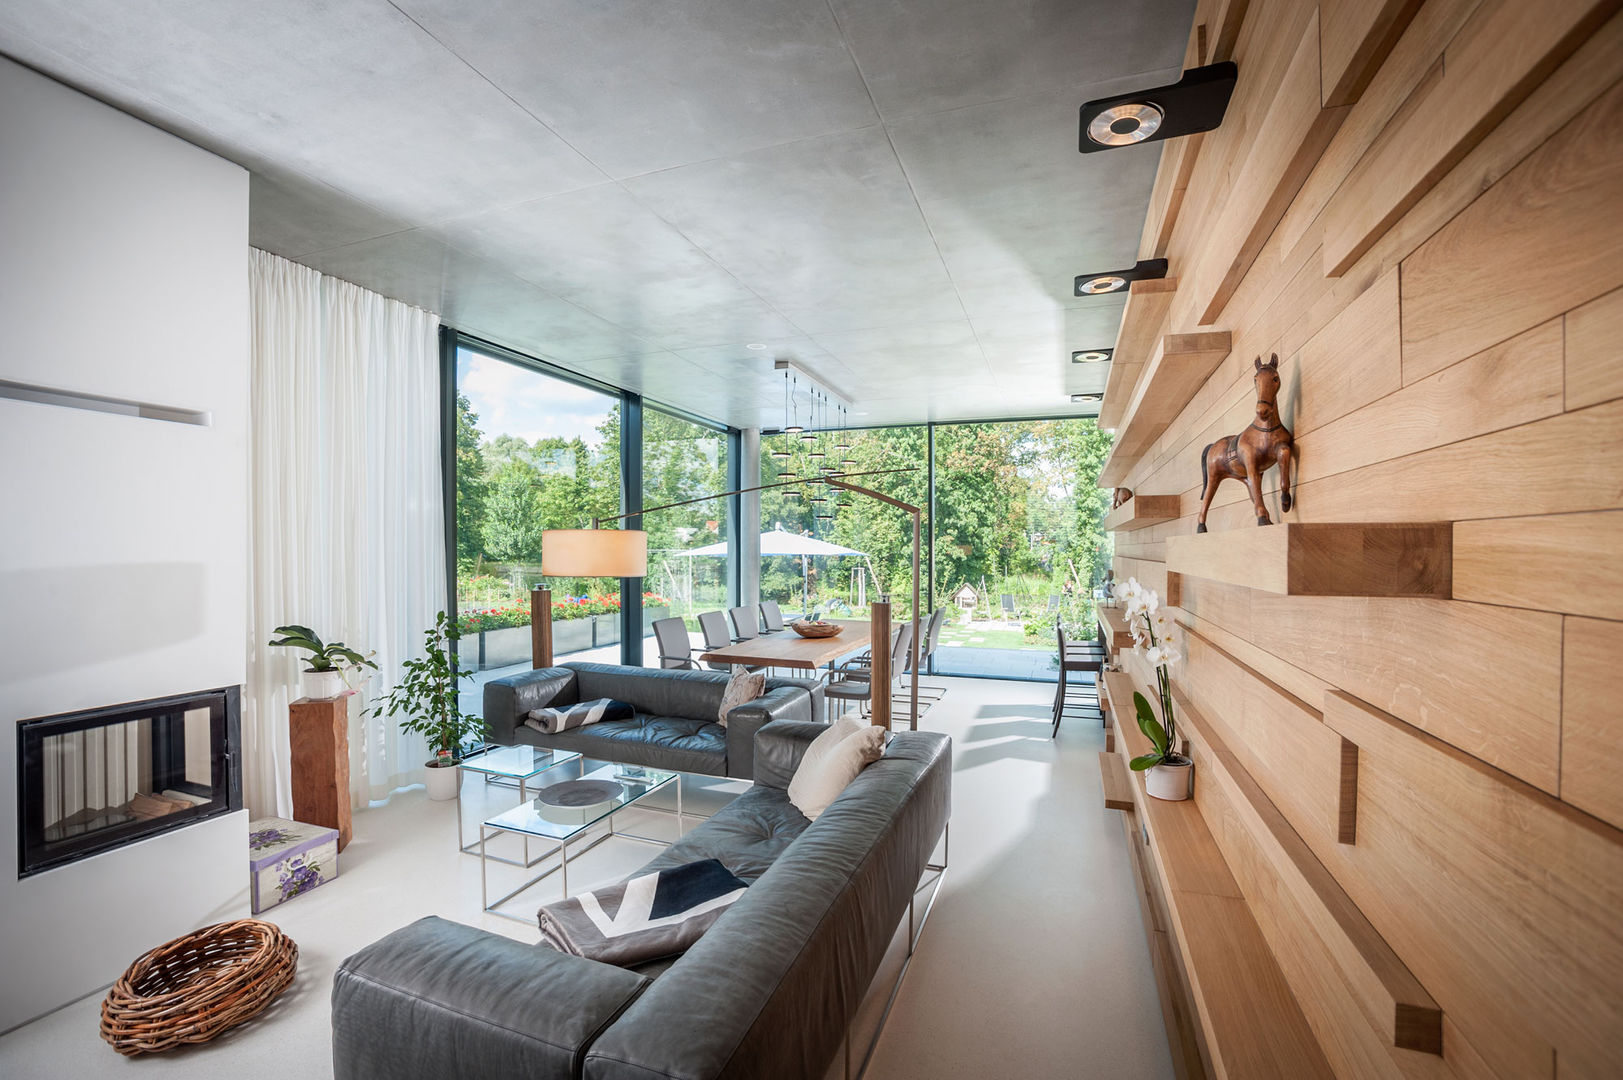 „Inseltraum“ - Einfamilienhaus in Brandenburg an der Havel, Sehw Architektur Sehw Architektur Salas modernas